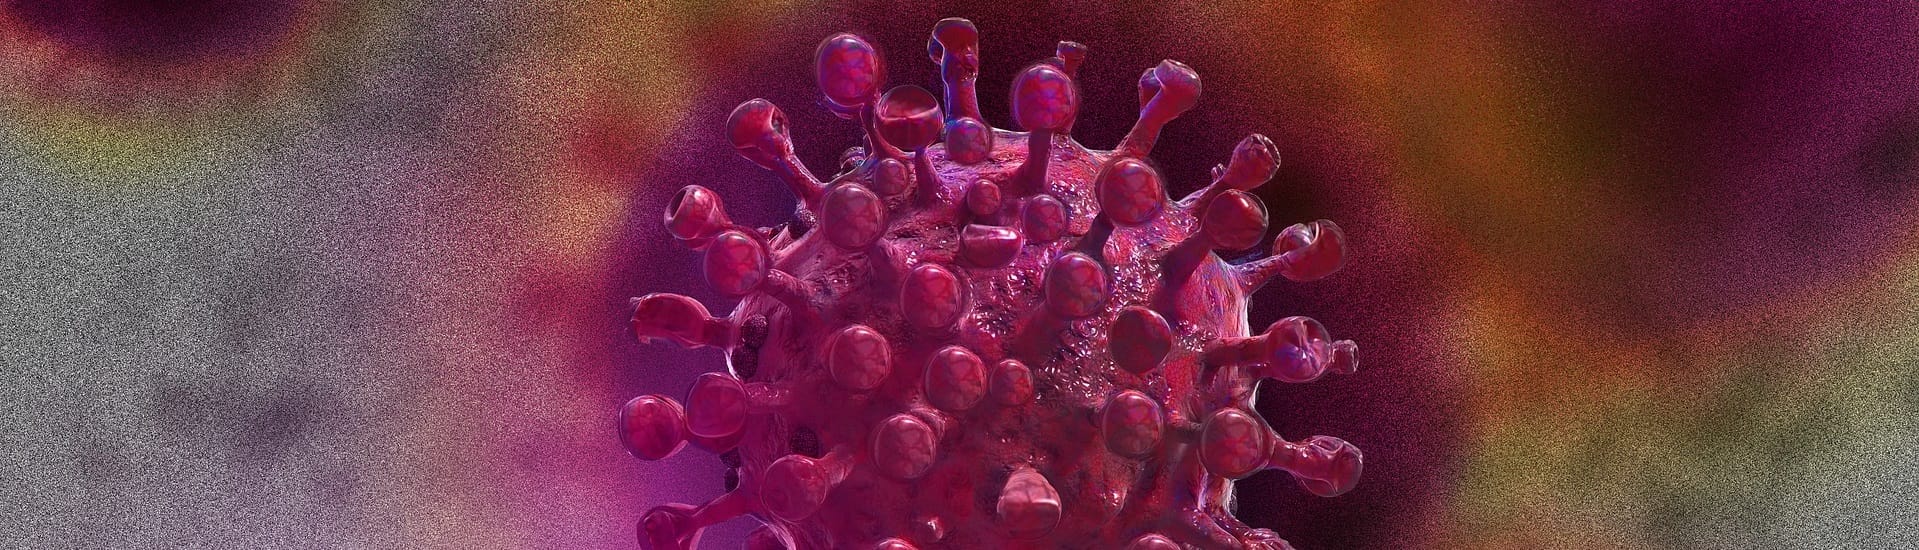 Coronavirus abstraktes Bild